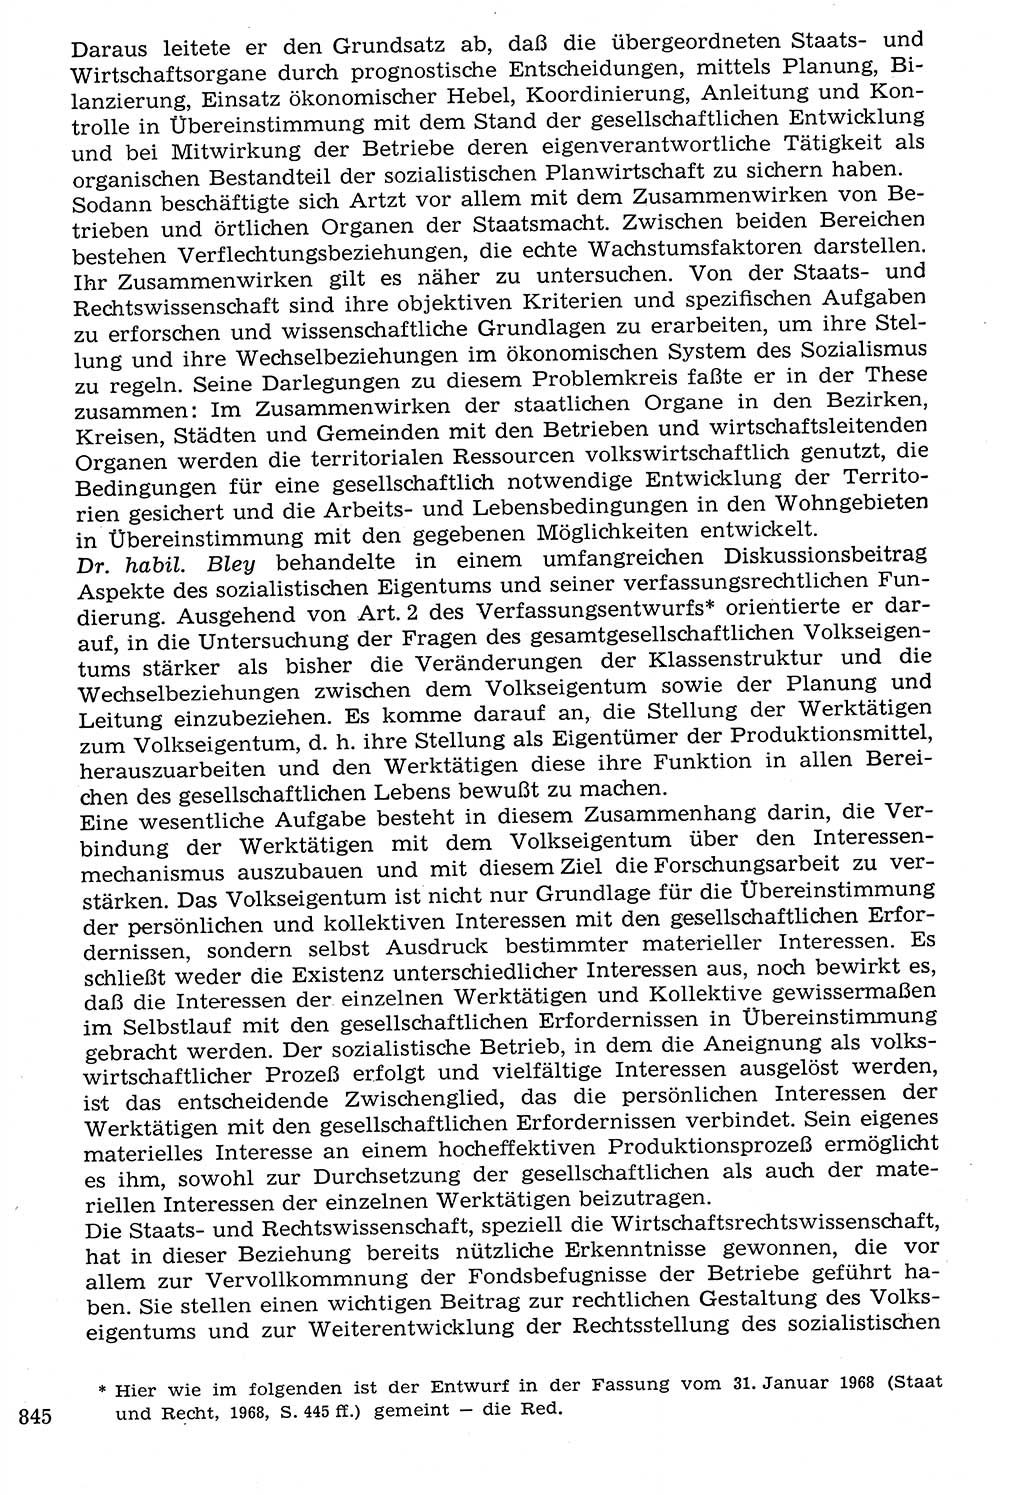 Staat und Recht (StuR), 17. Jahrgang [Deutsche Demokratische Republik (DDR)] 1968, Seite 845 (StuR DDR 1968, S. 845)